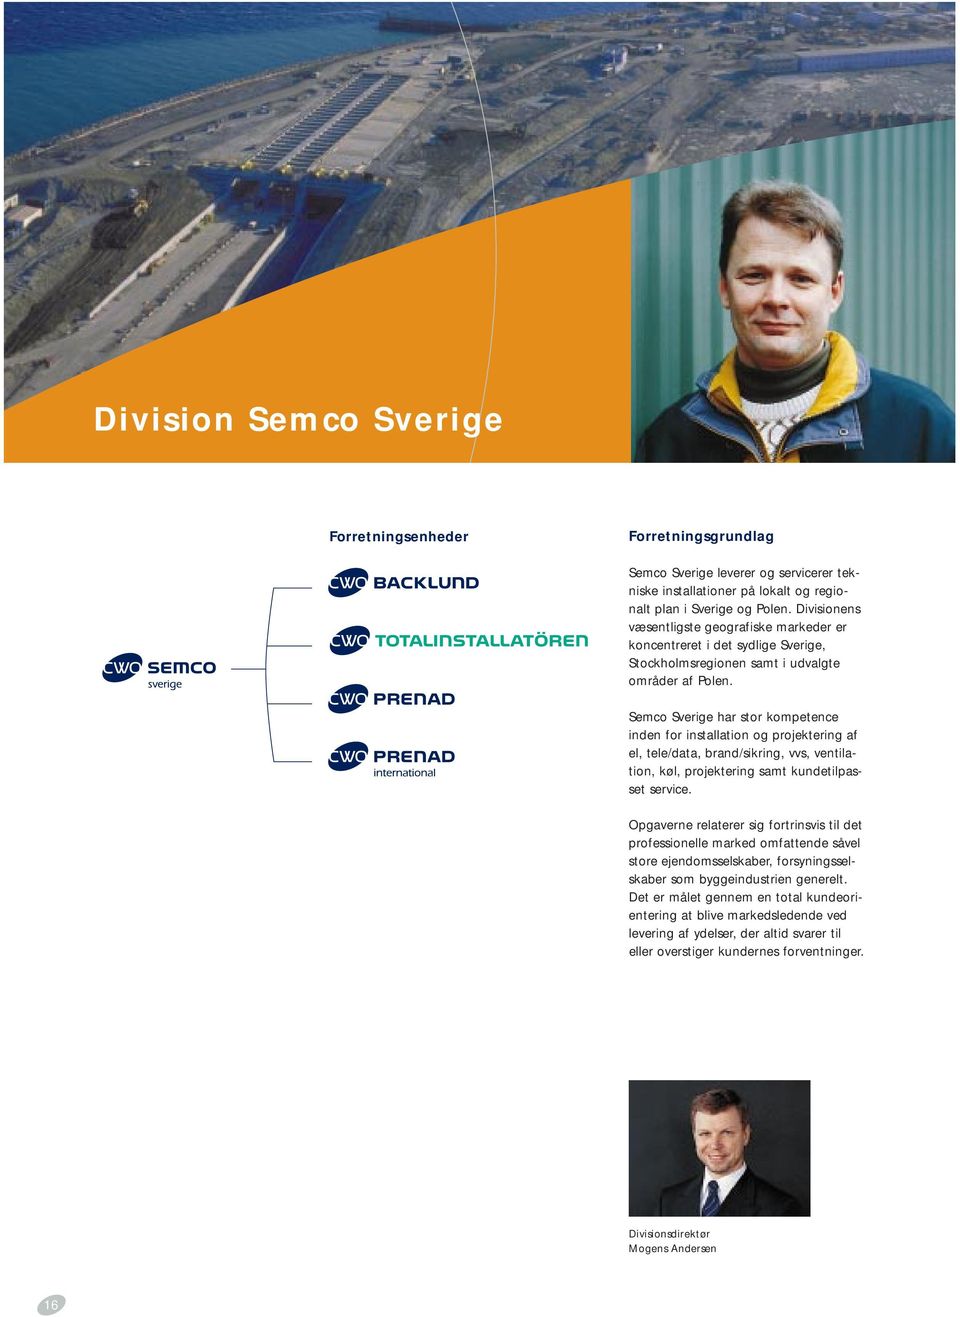 Semco Sverige har stor kompetence inden for installation og projektering af el, tele/data, brand/sikring, vvs, ventilation, køl, projektering samt kundetilpasset service.